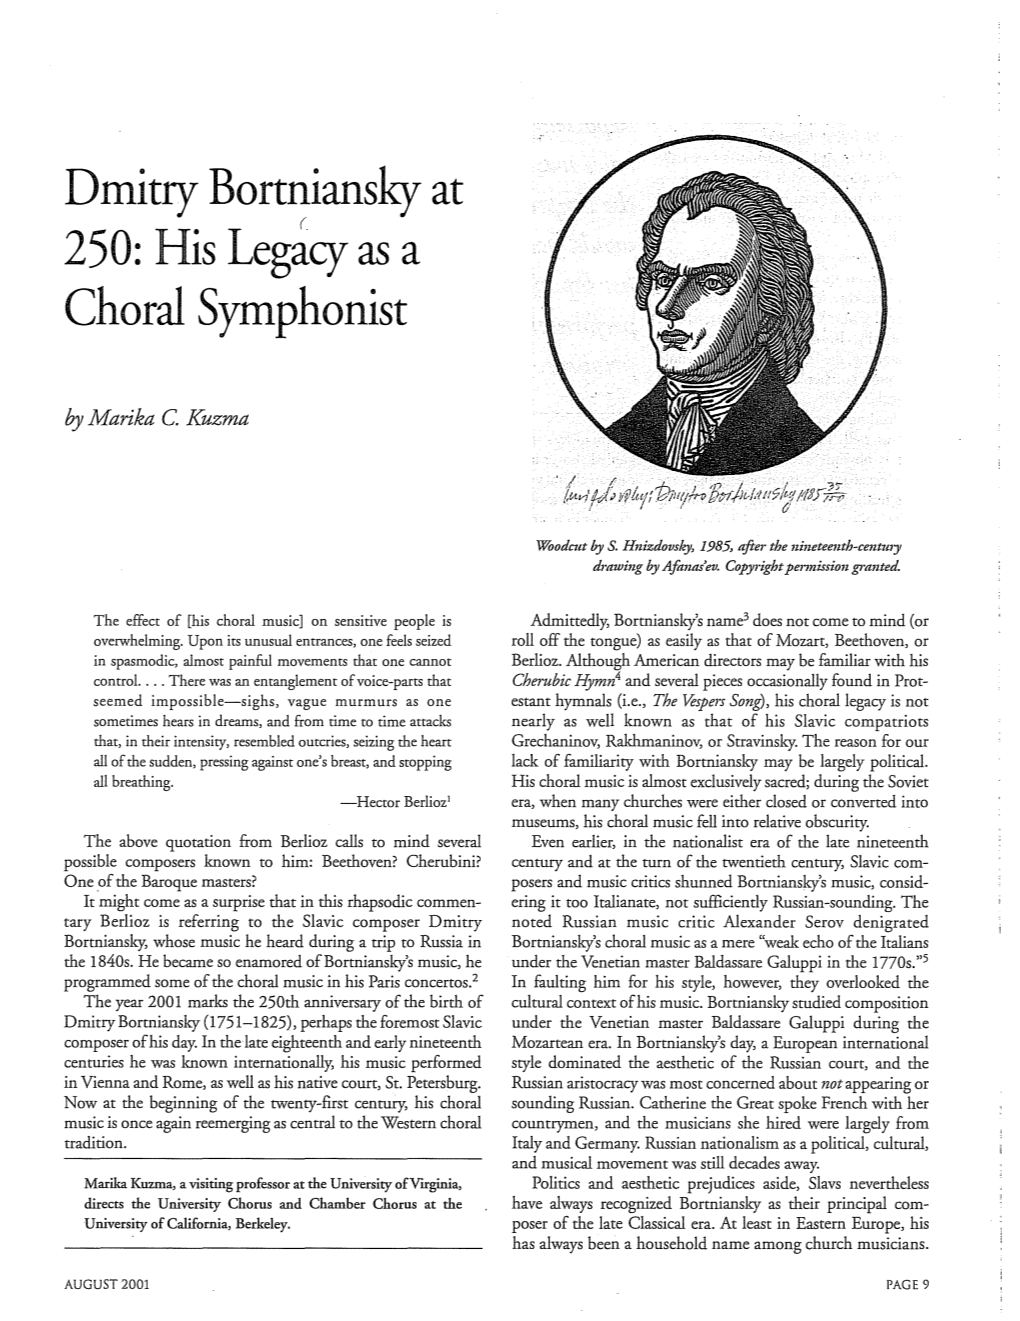 Dmitry Bortniansky at Choral Symphonist